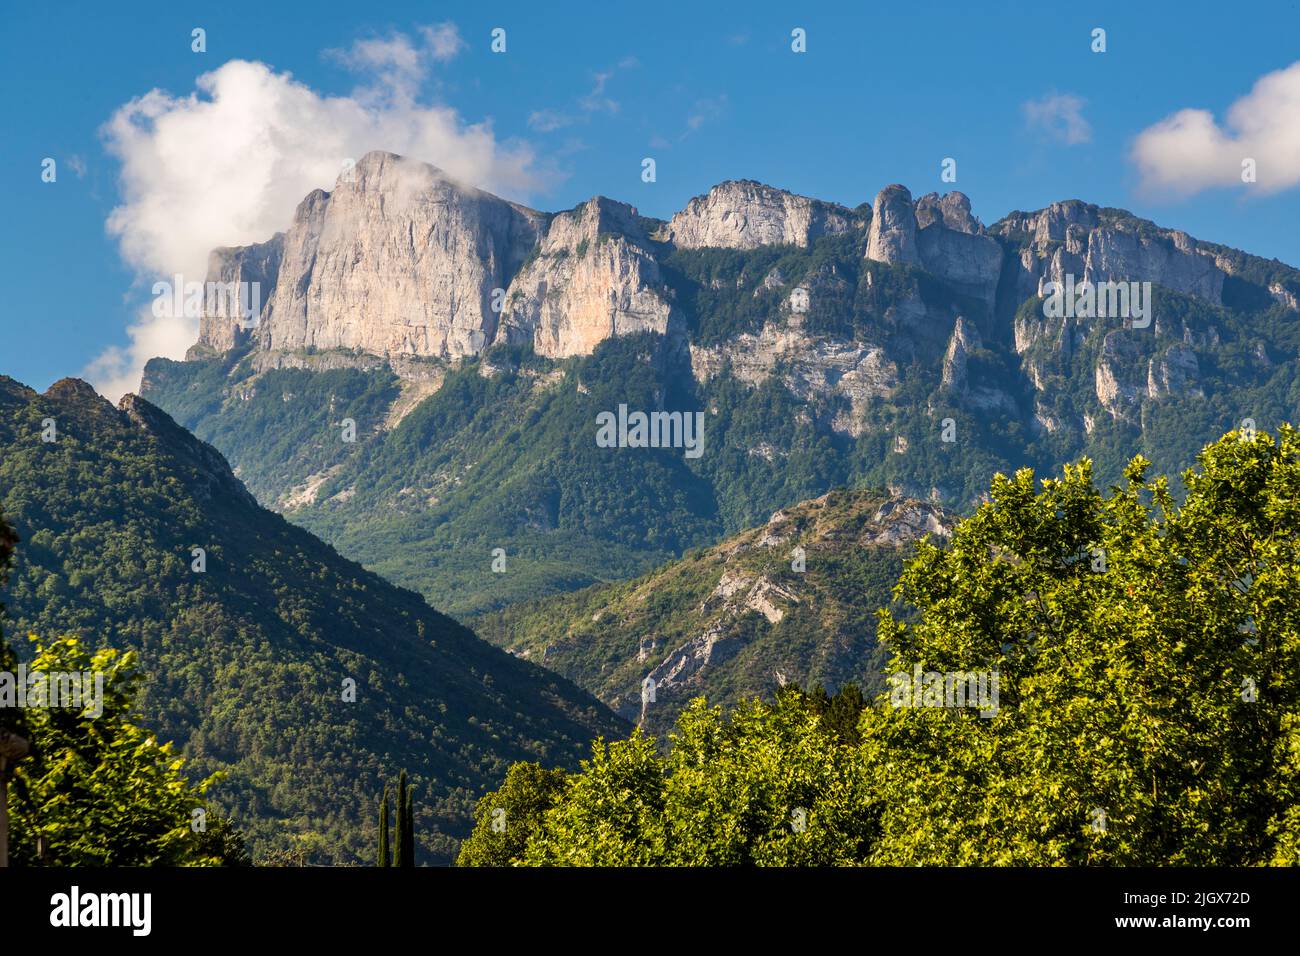 La cordillera de Trois Becs es una impresionante formación rocosa en el valle de Drôme, Francia Foto de stock